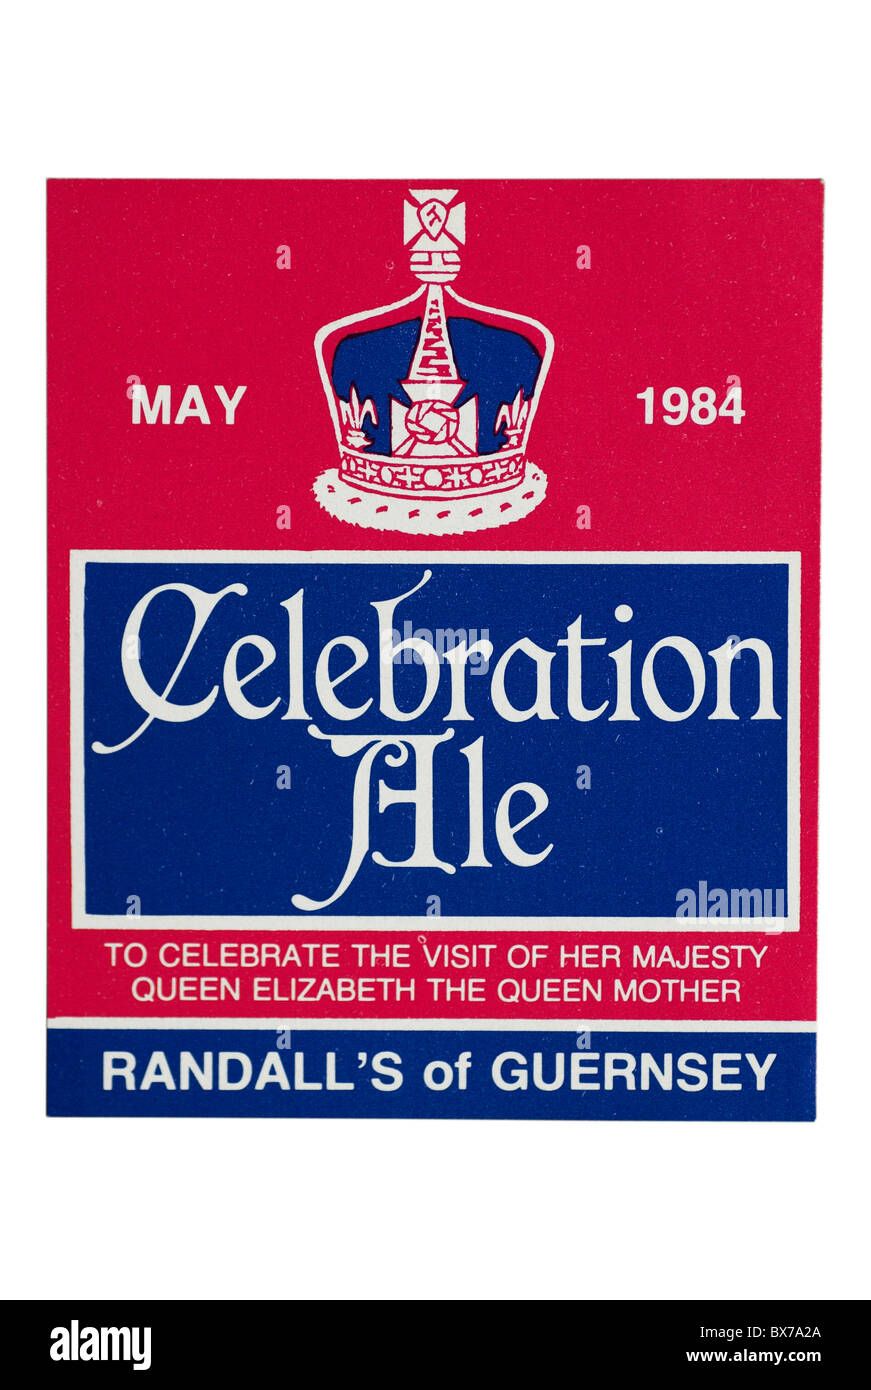 Randall von Guernsey Feier Ale-Flaschen-Etikett - Mai 1984. Stockfoto